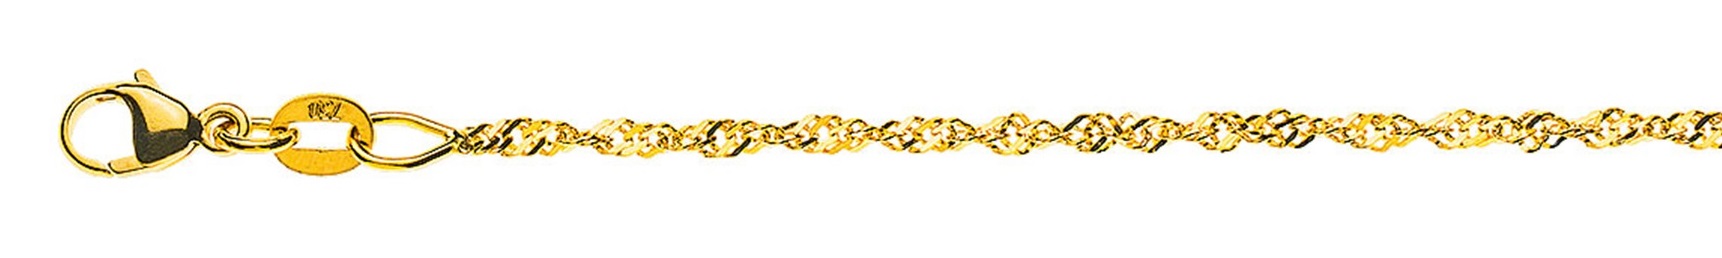 AURONOS Prestige Yellow Gold 18K Singapore Necklace 45cm 1.5mm